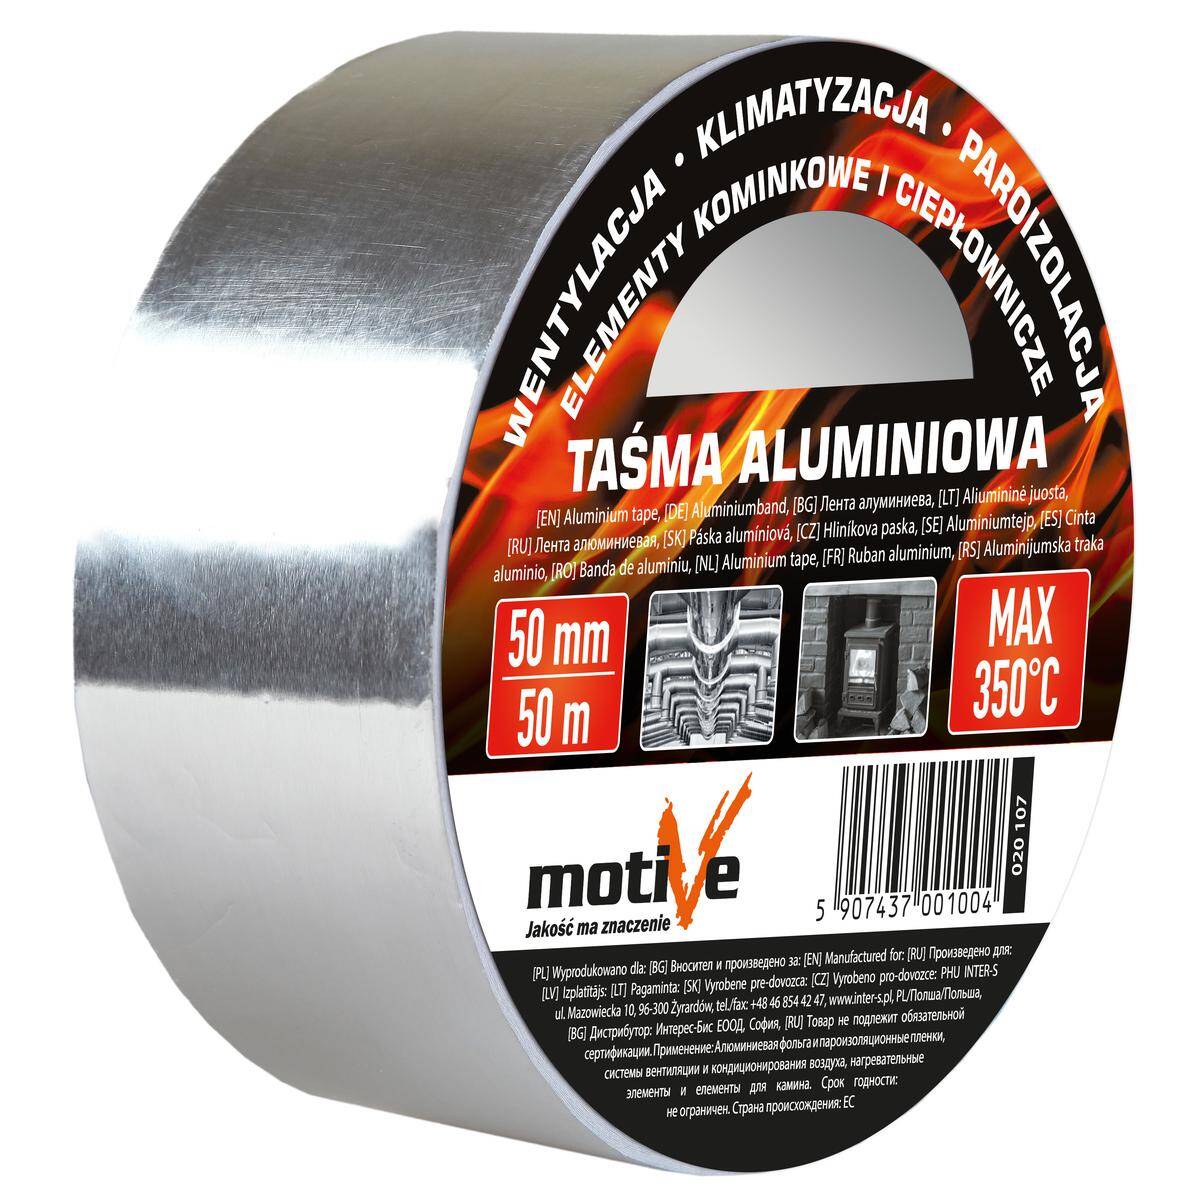 Taśma aluminiowa 50 mm / 25 m HT 350° MOTIVE 020 104